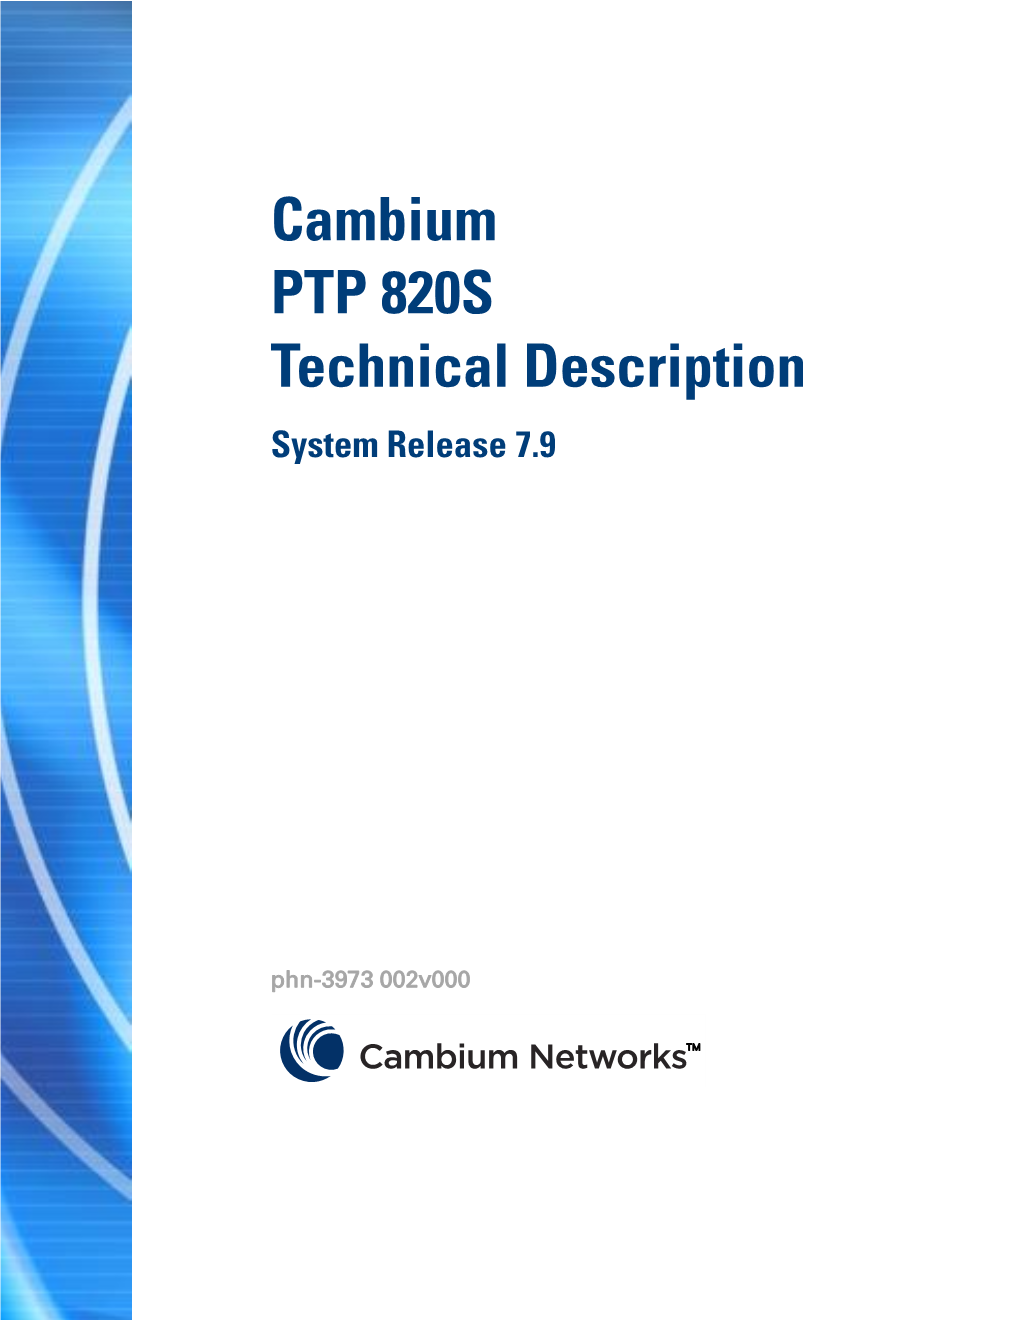 Cambium PTP 820S Technical Description System Release 7.9